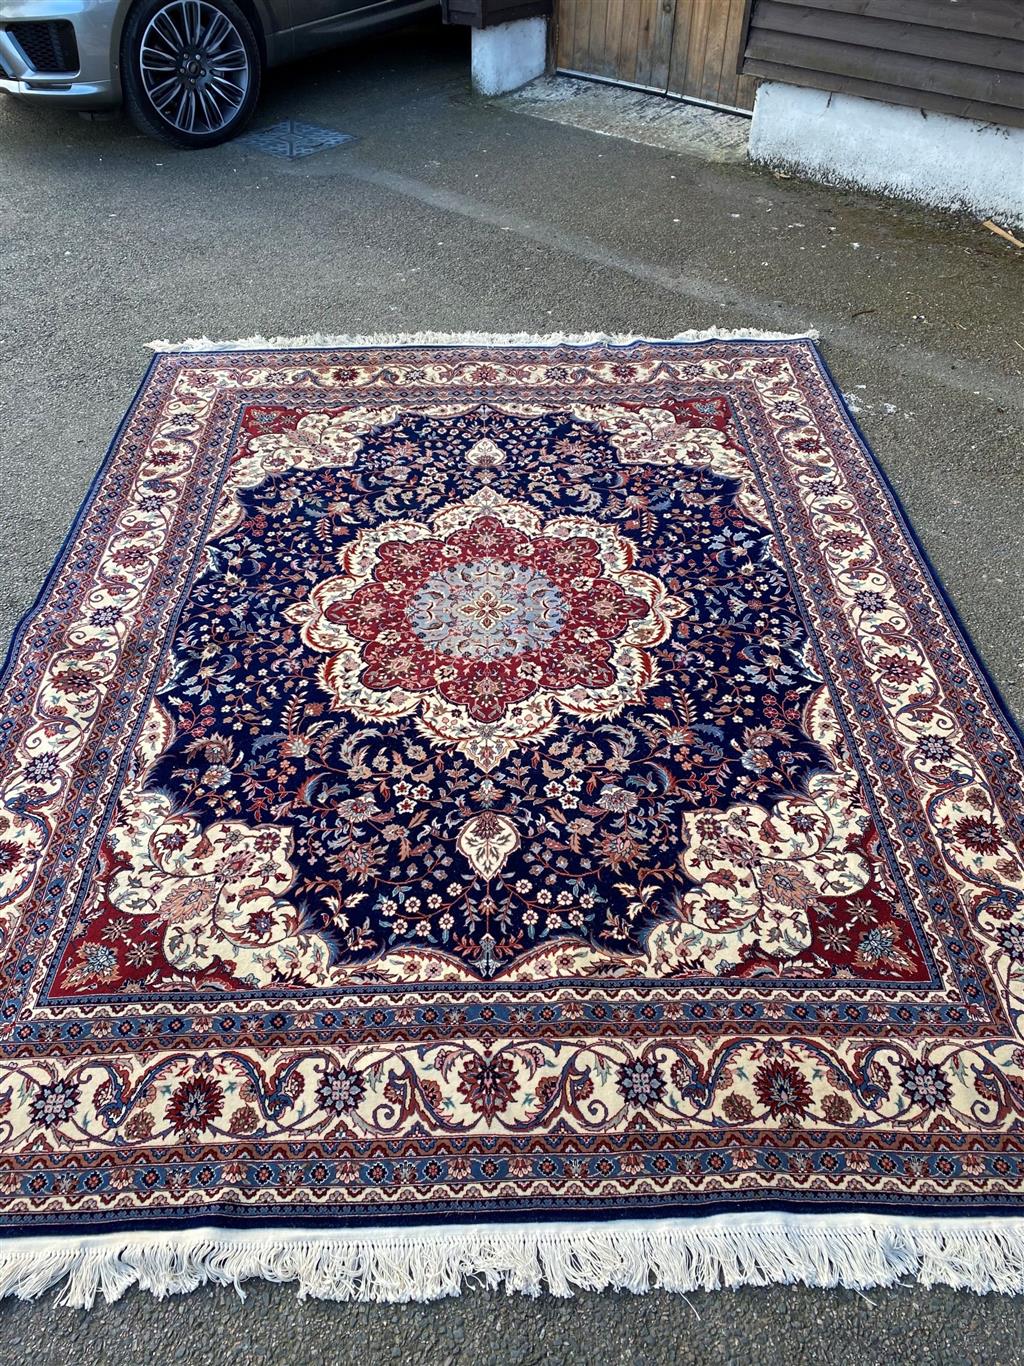 A Duruder blue ground carpet, 306 x 242cm